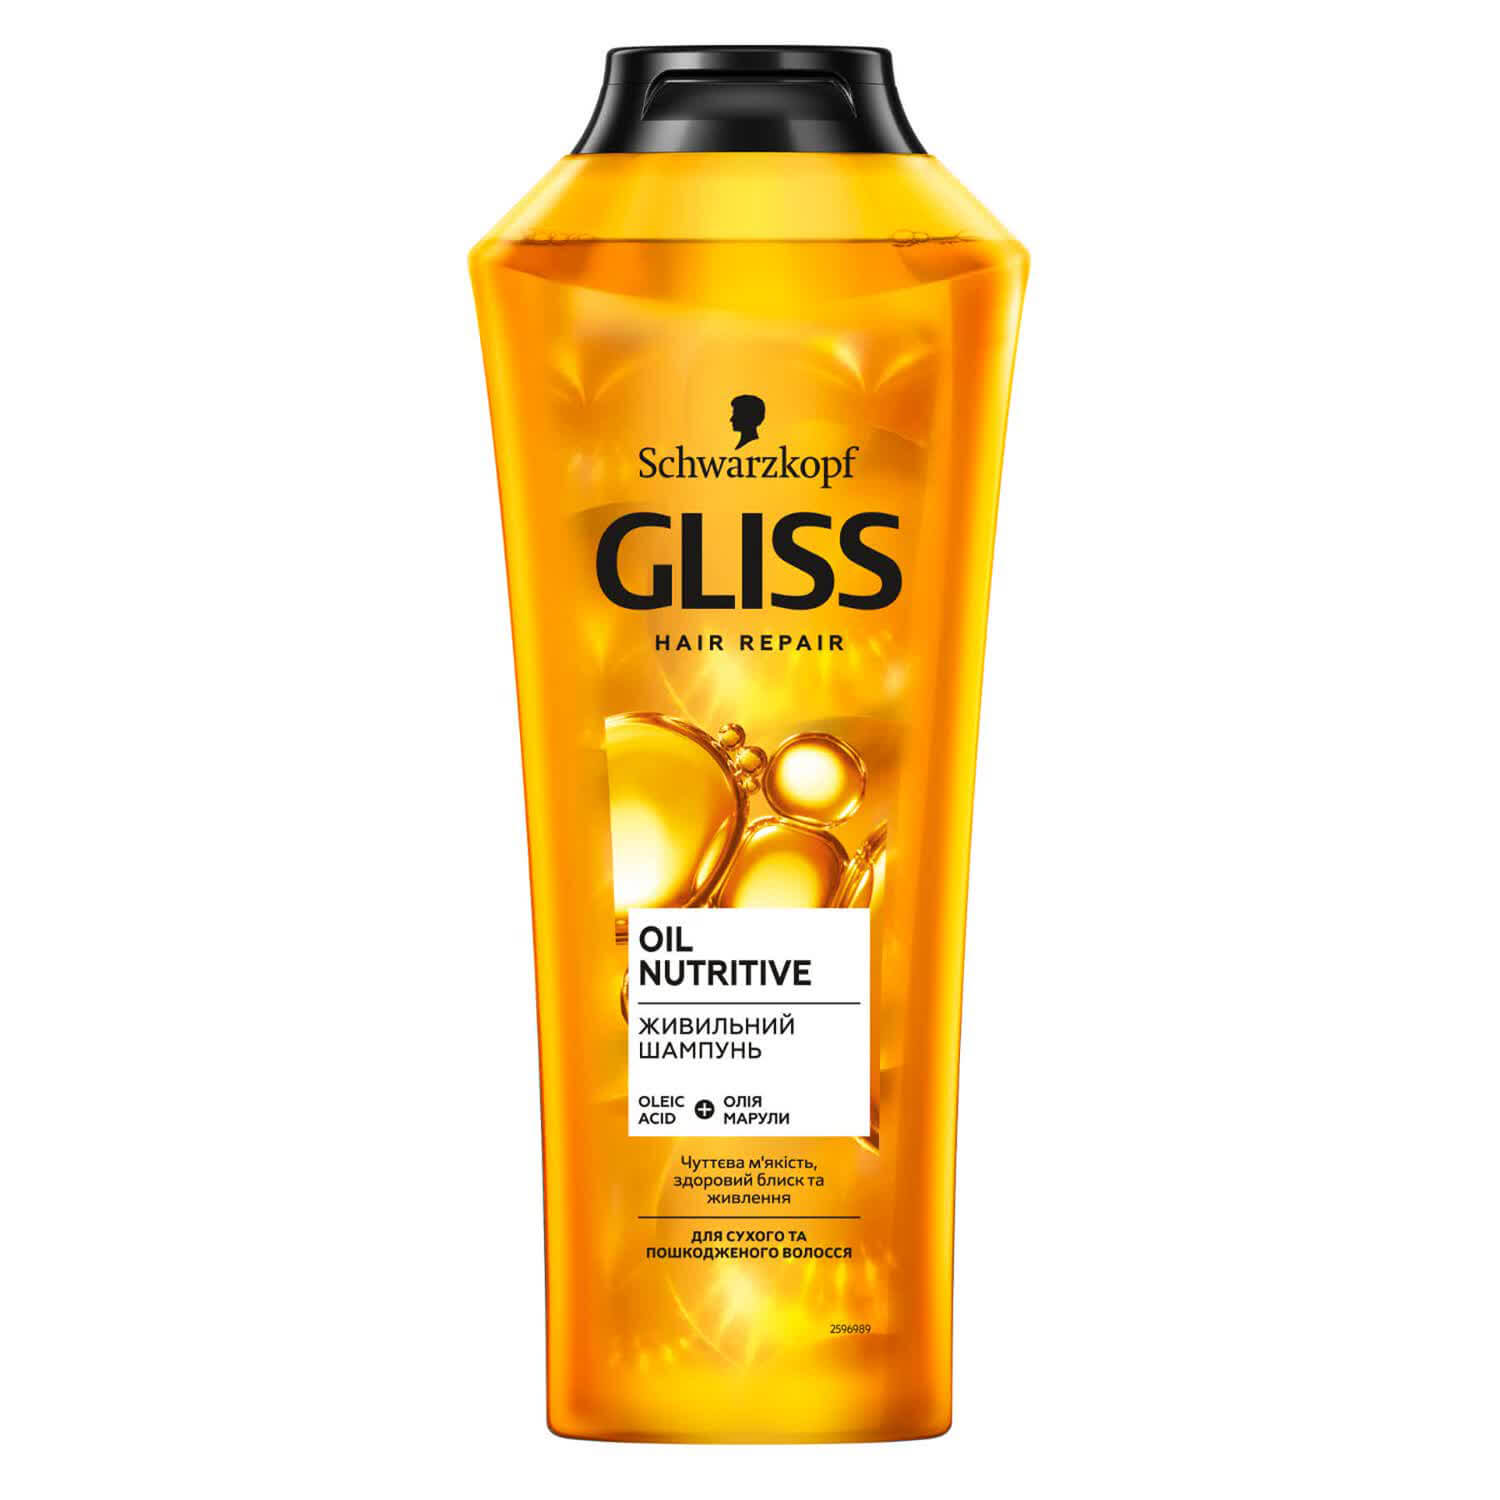 Питательный шампунь GLISS Oil Nutritive для сухих и поврежденных волос, 400 мл